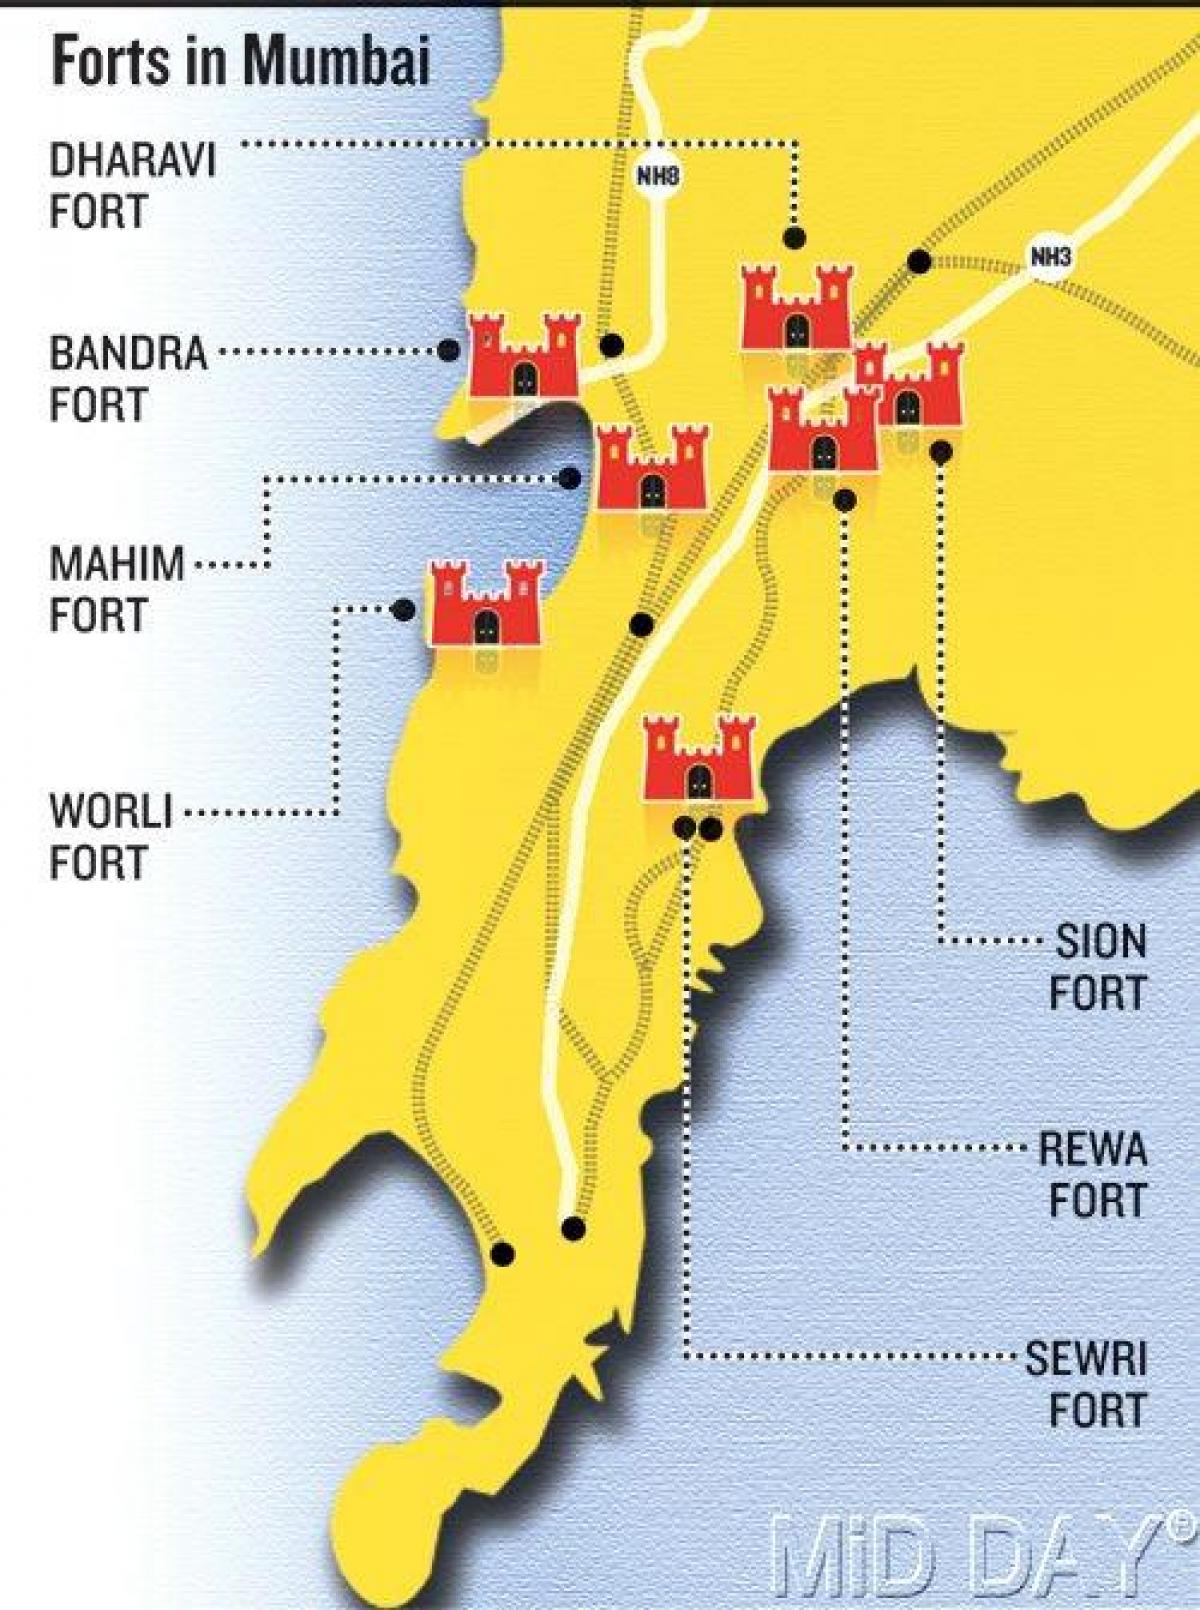 Mumbai fort mapa da área